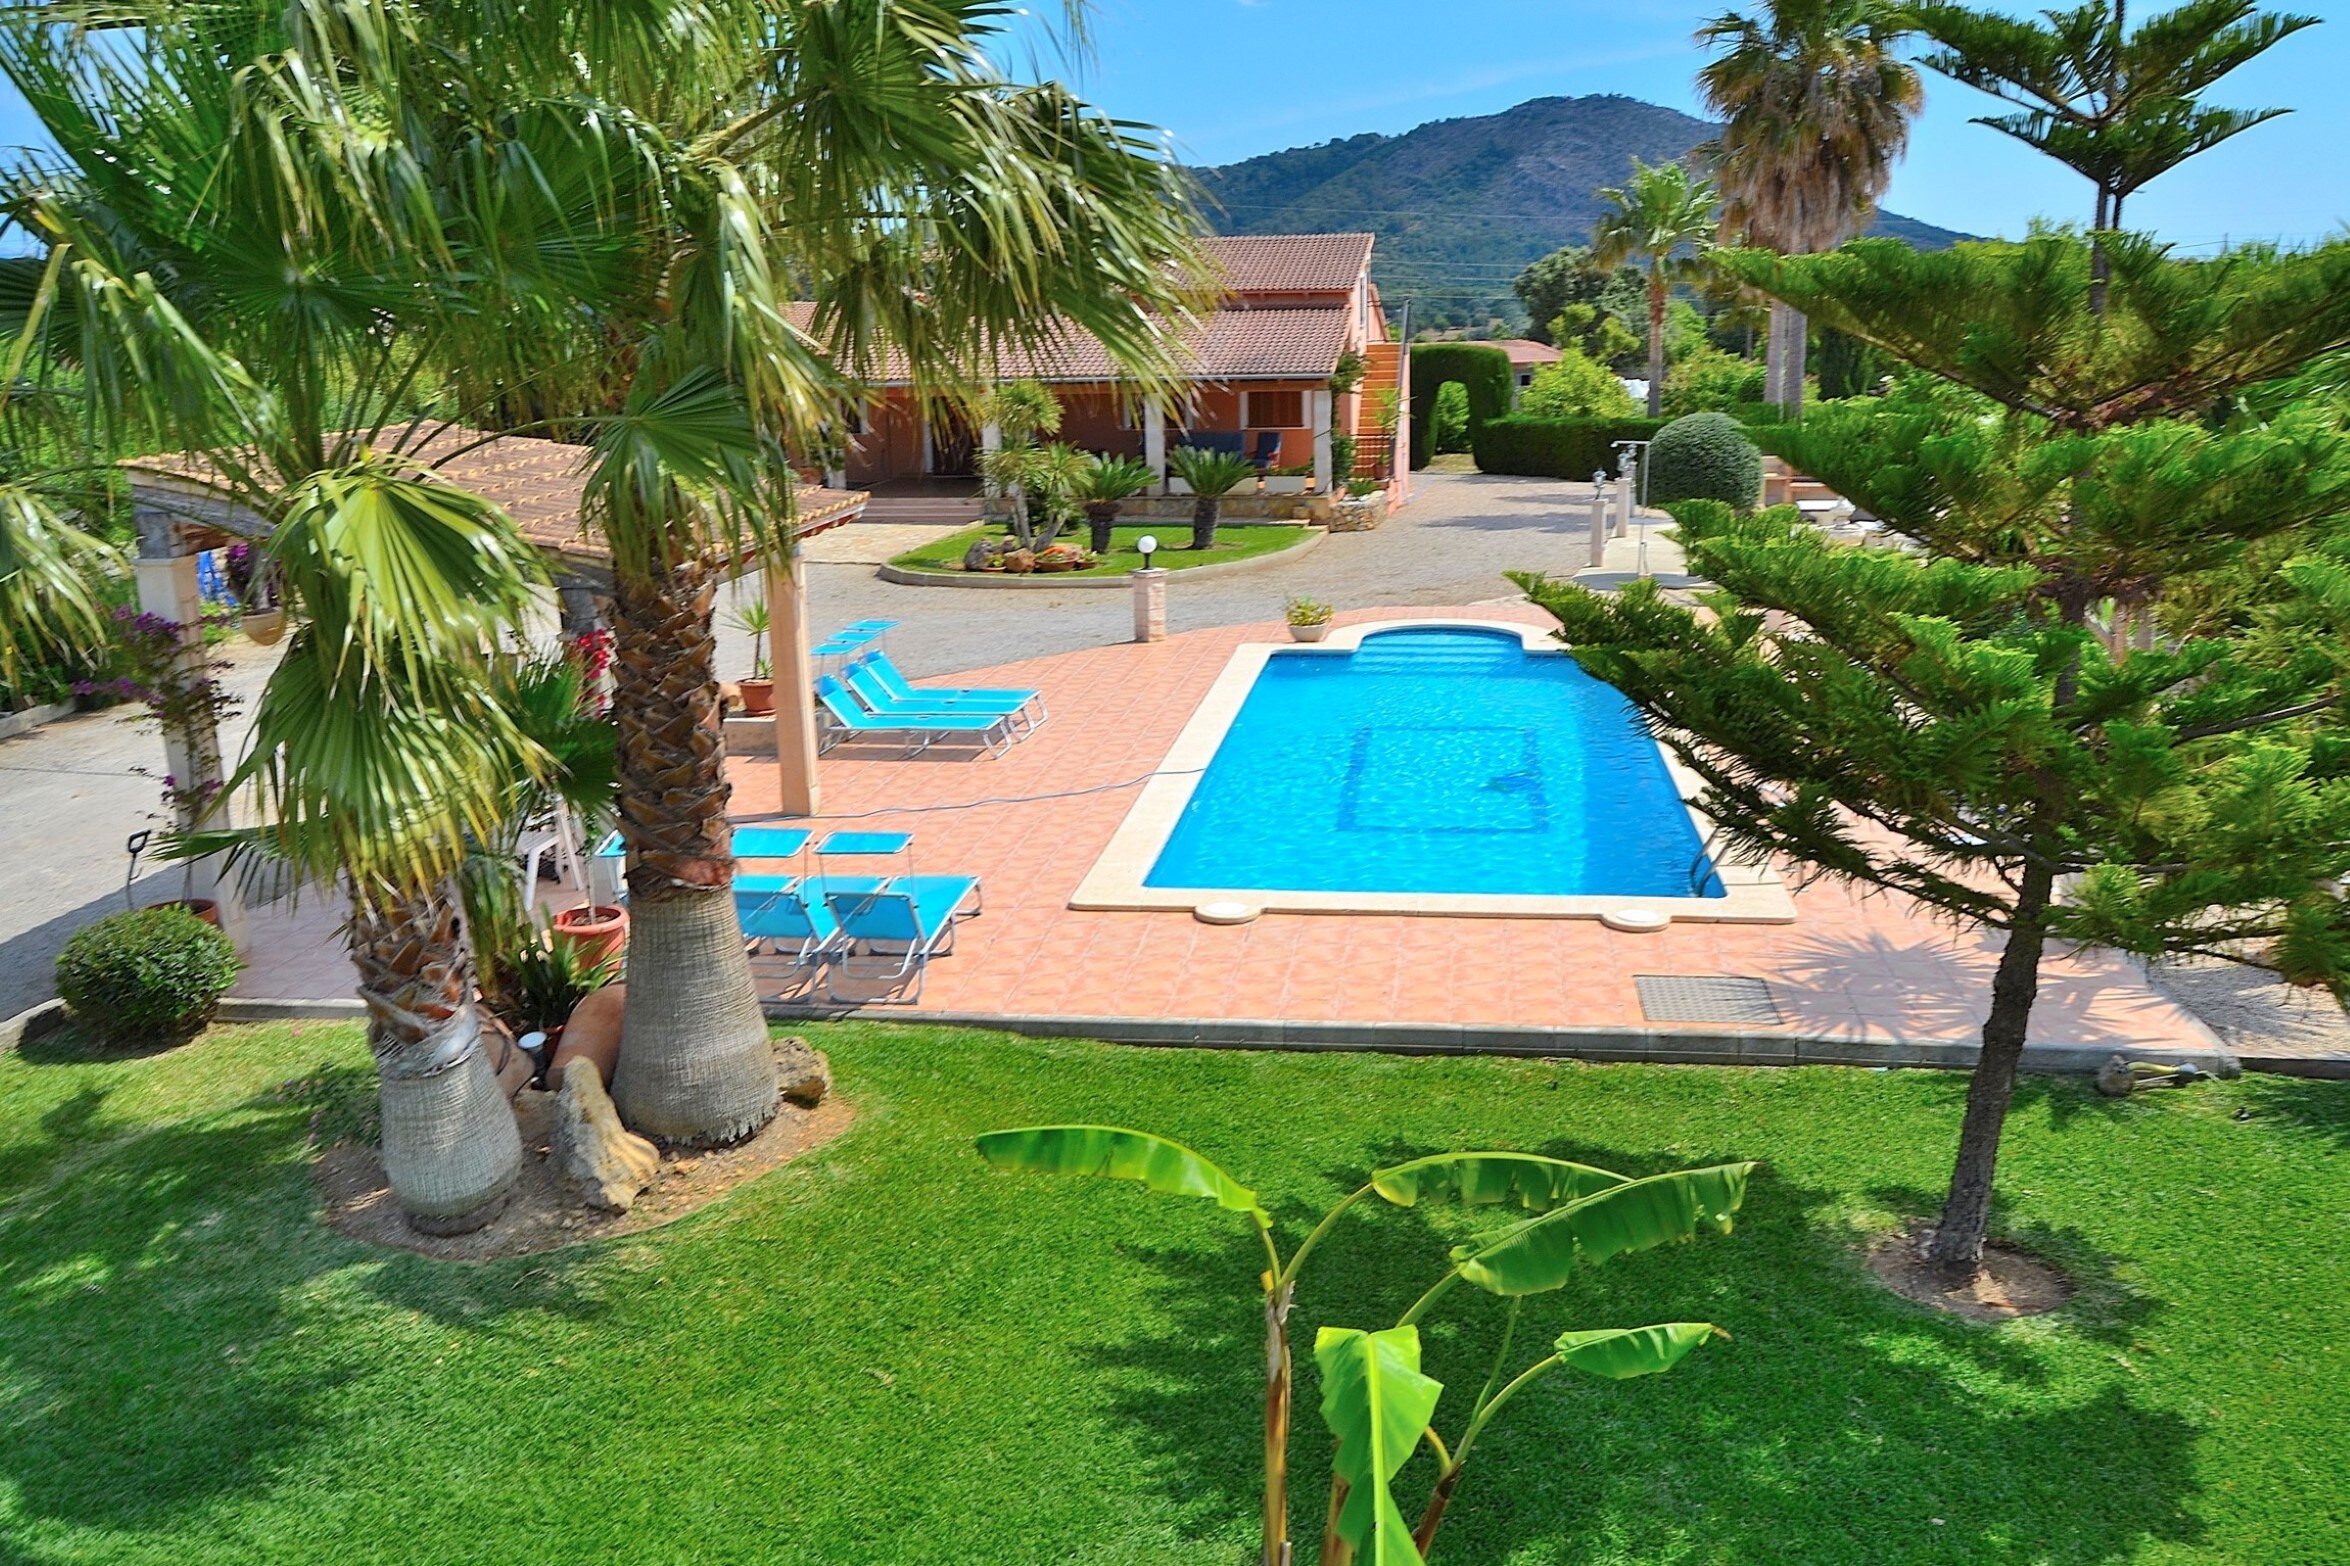 Photo of the pool of the villa in Inca Mallorca